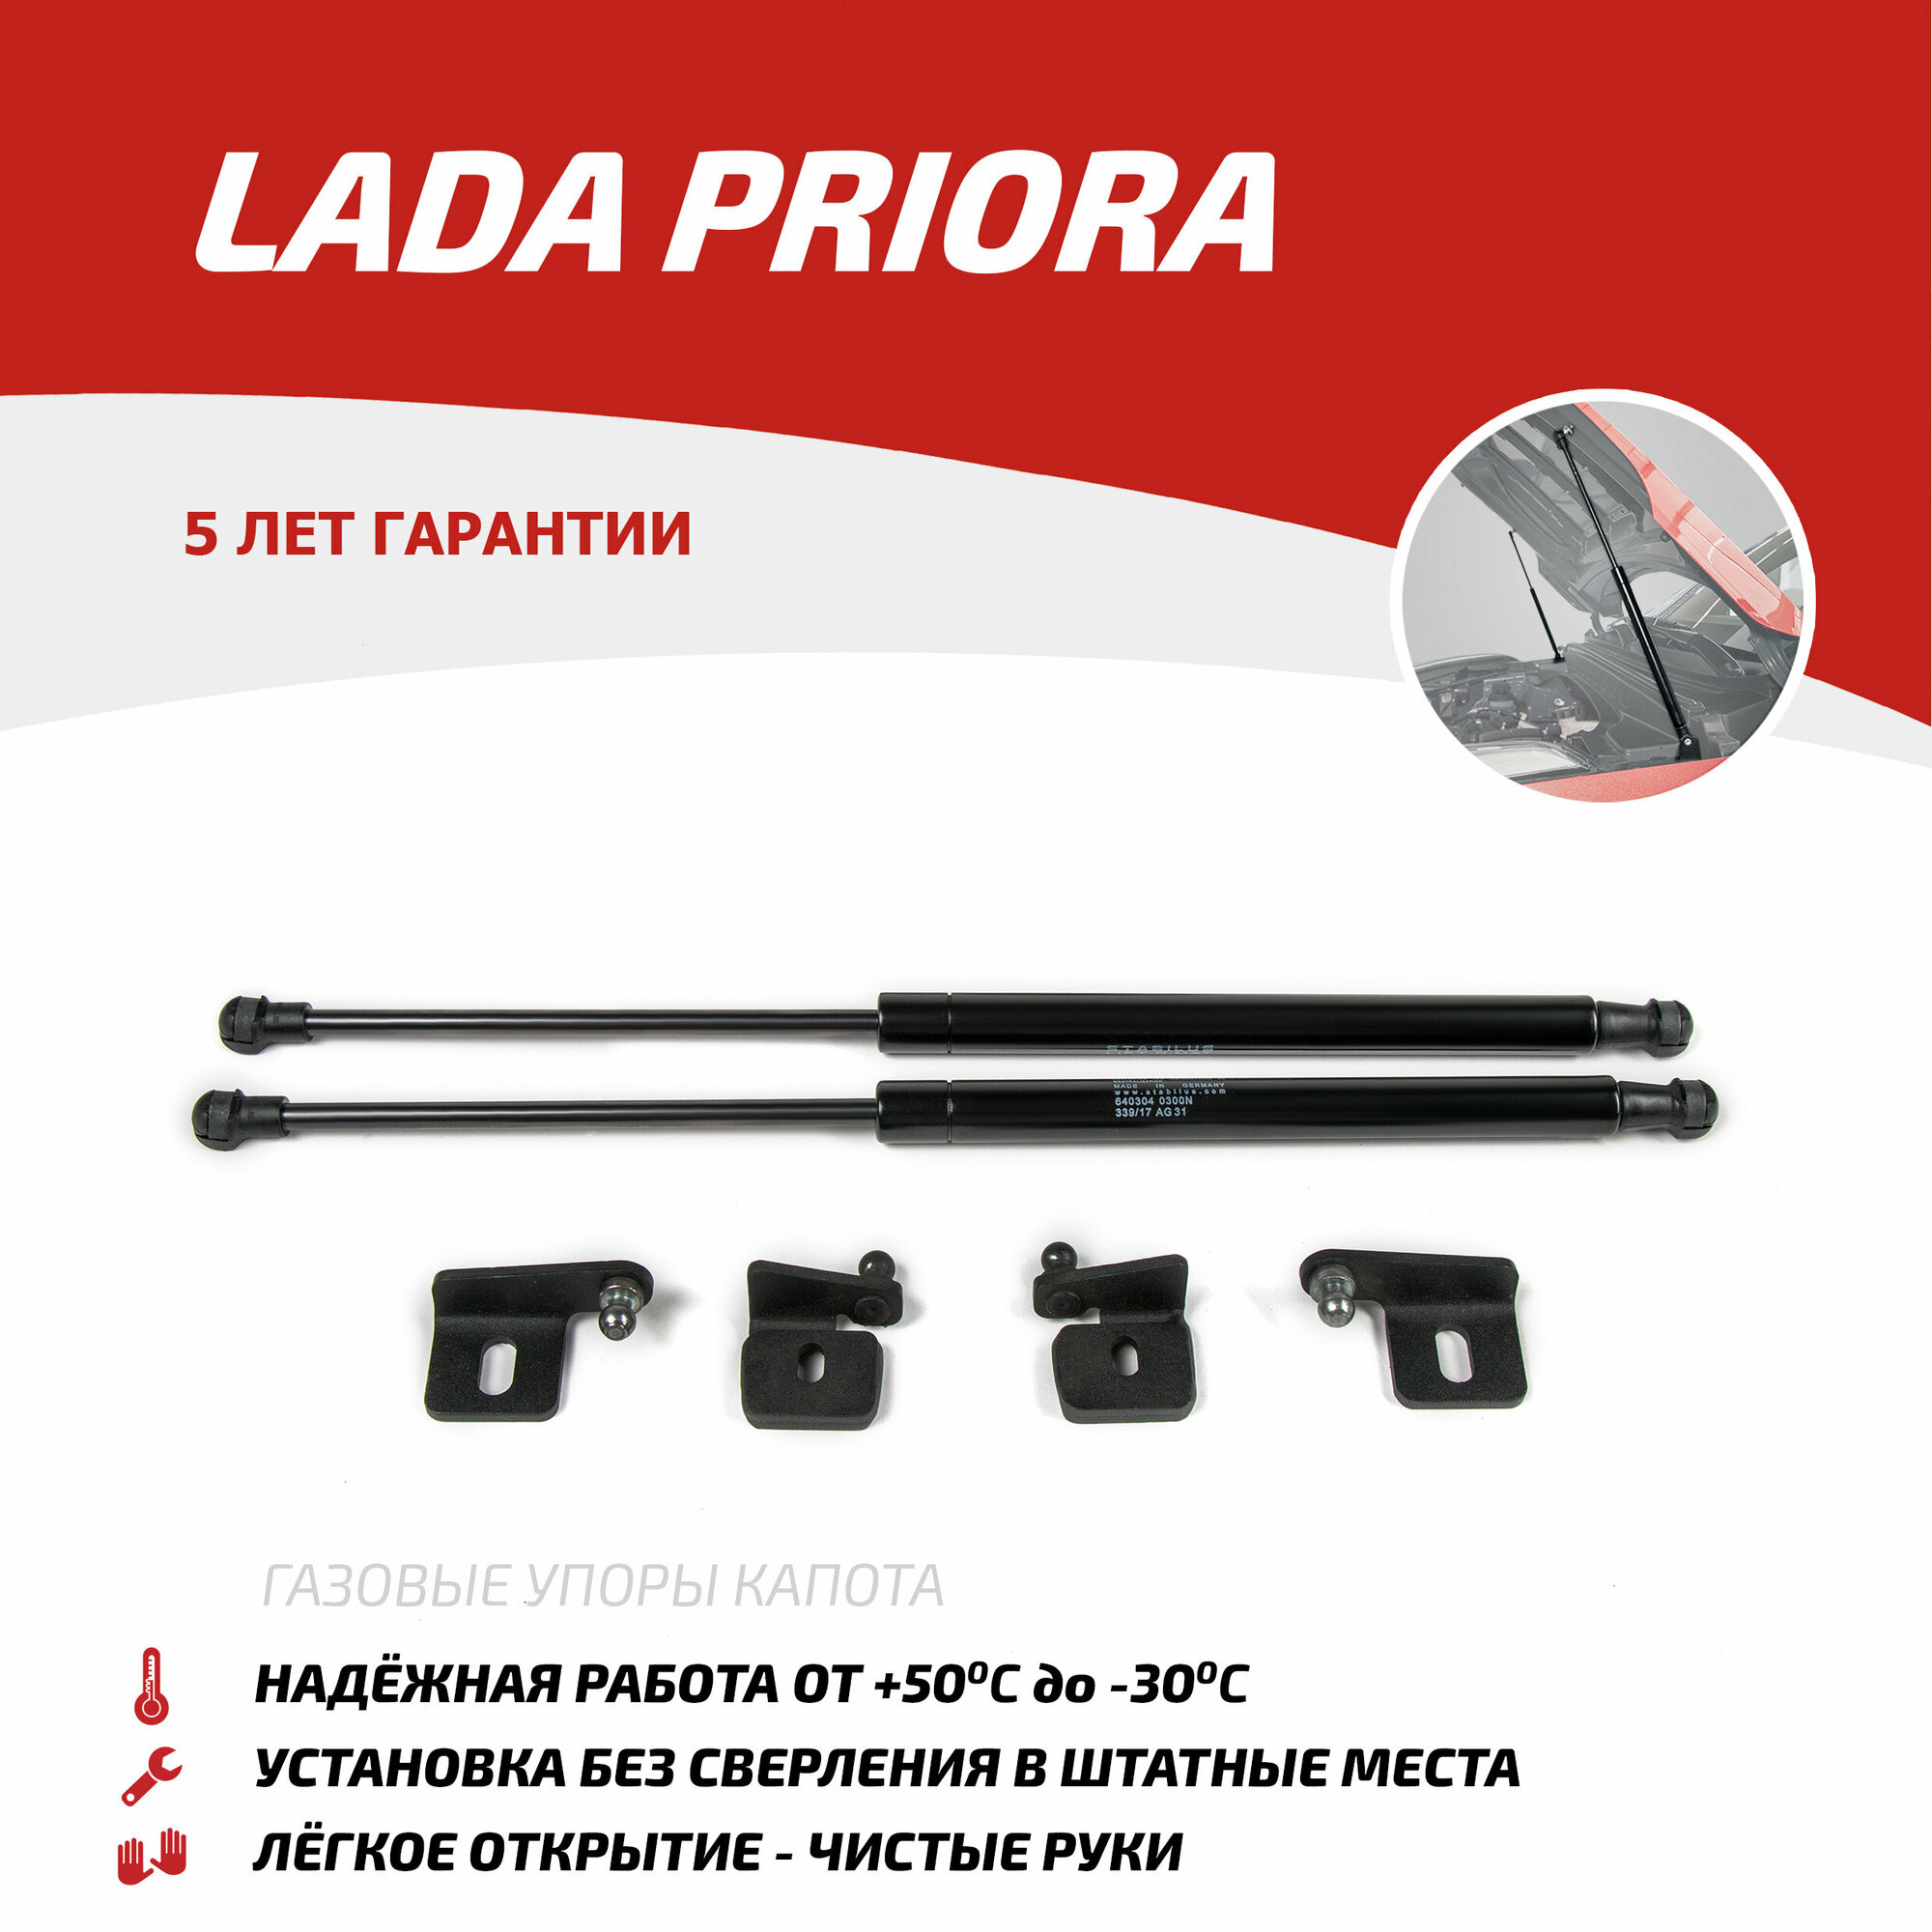 Газовые упоры капота АвтоУпор для Lada Priora 2007-2018, 2 шт, ULAPRI012